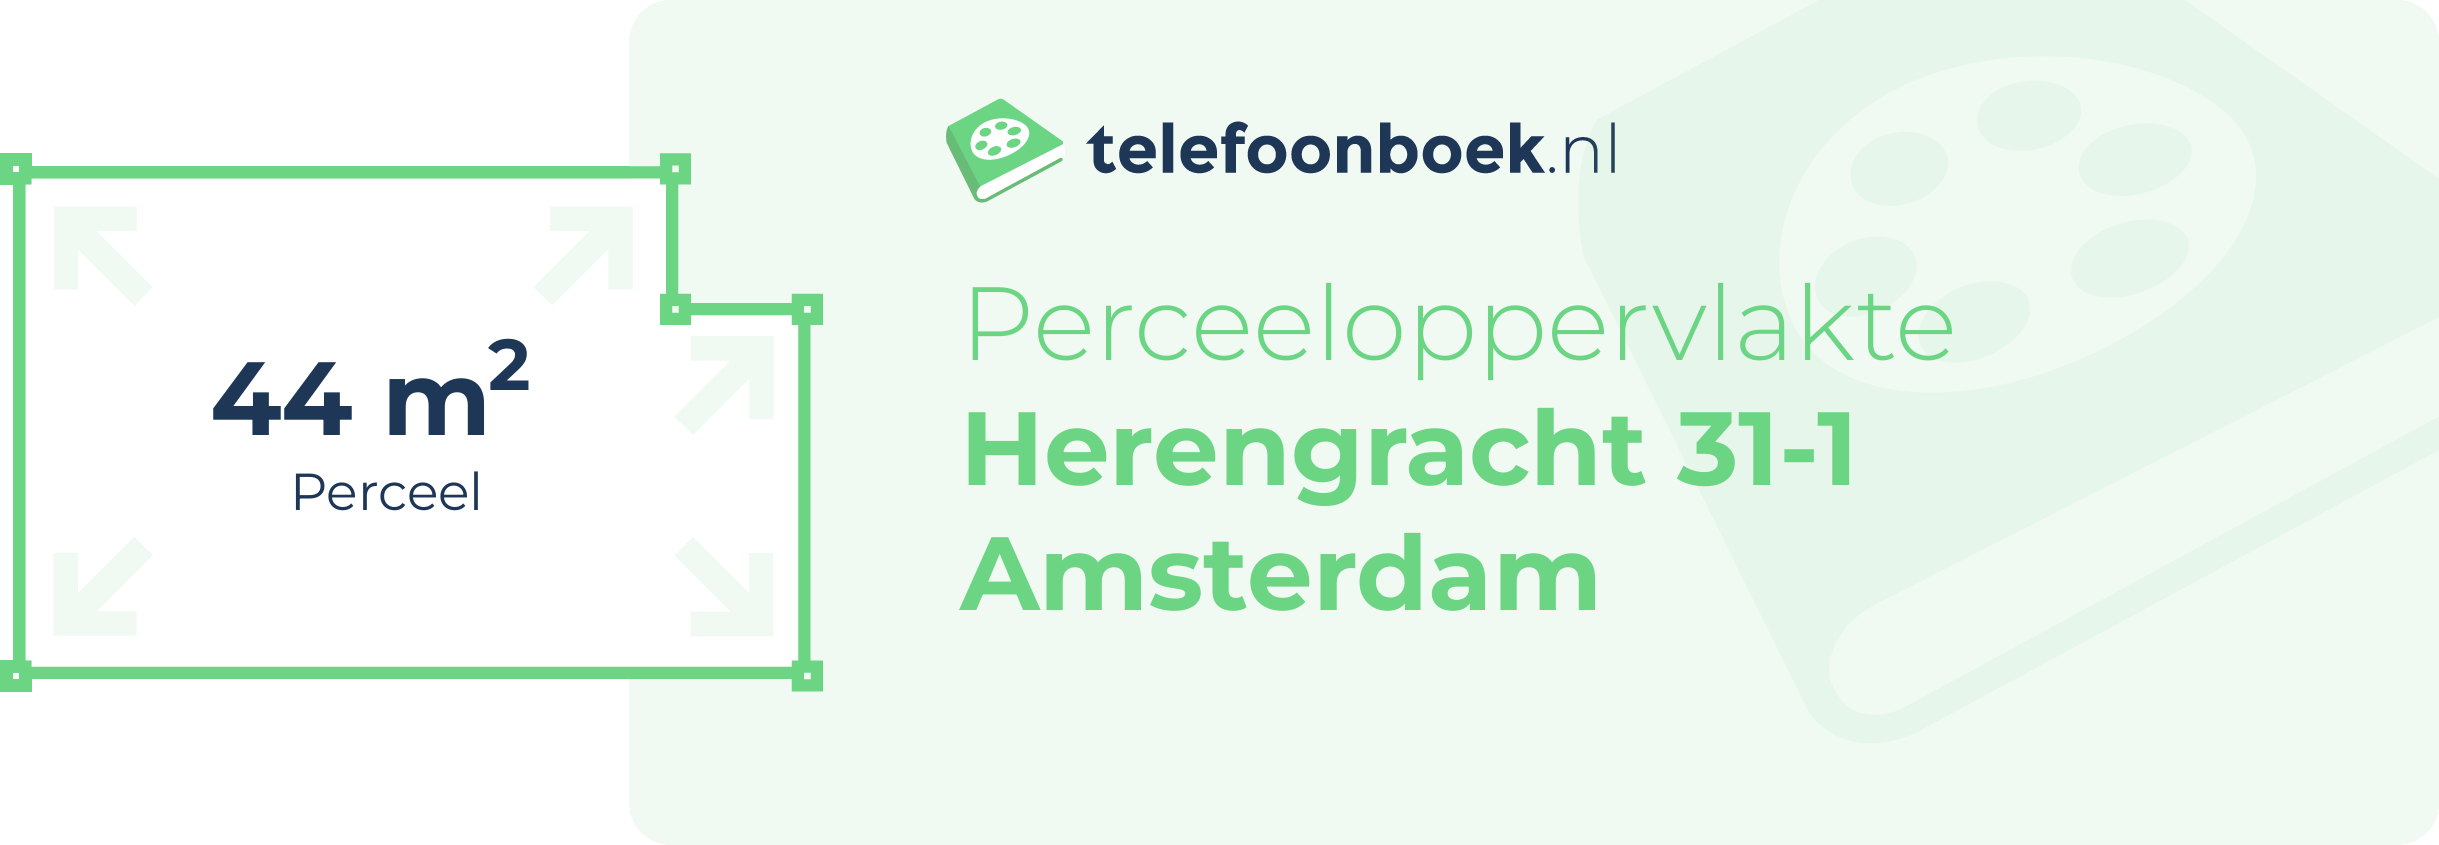 Perceeloppervlakte Herengracht 31-1 Amsterdam